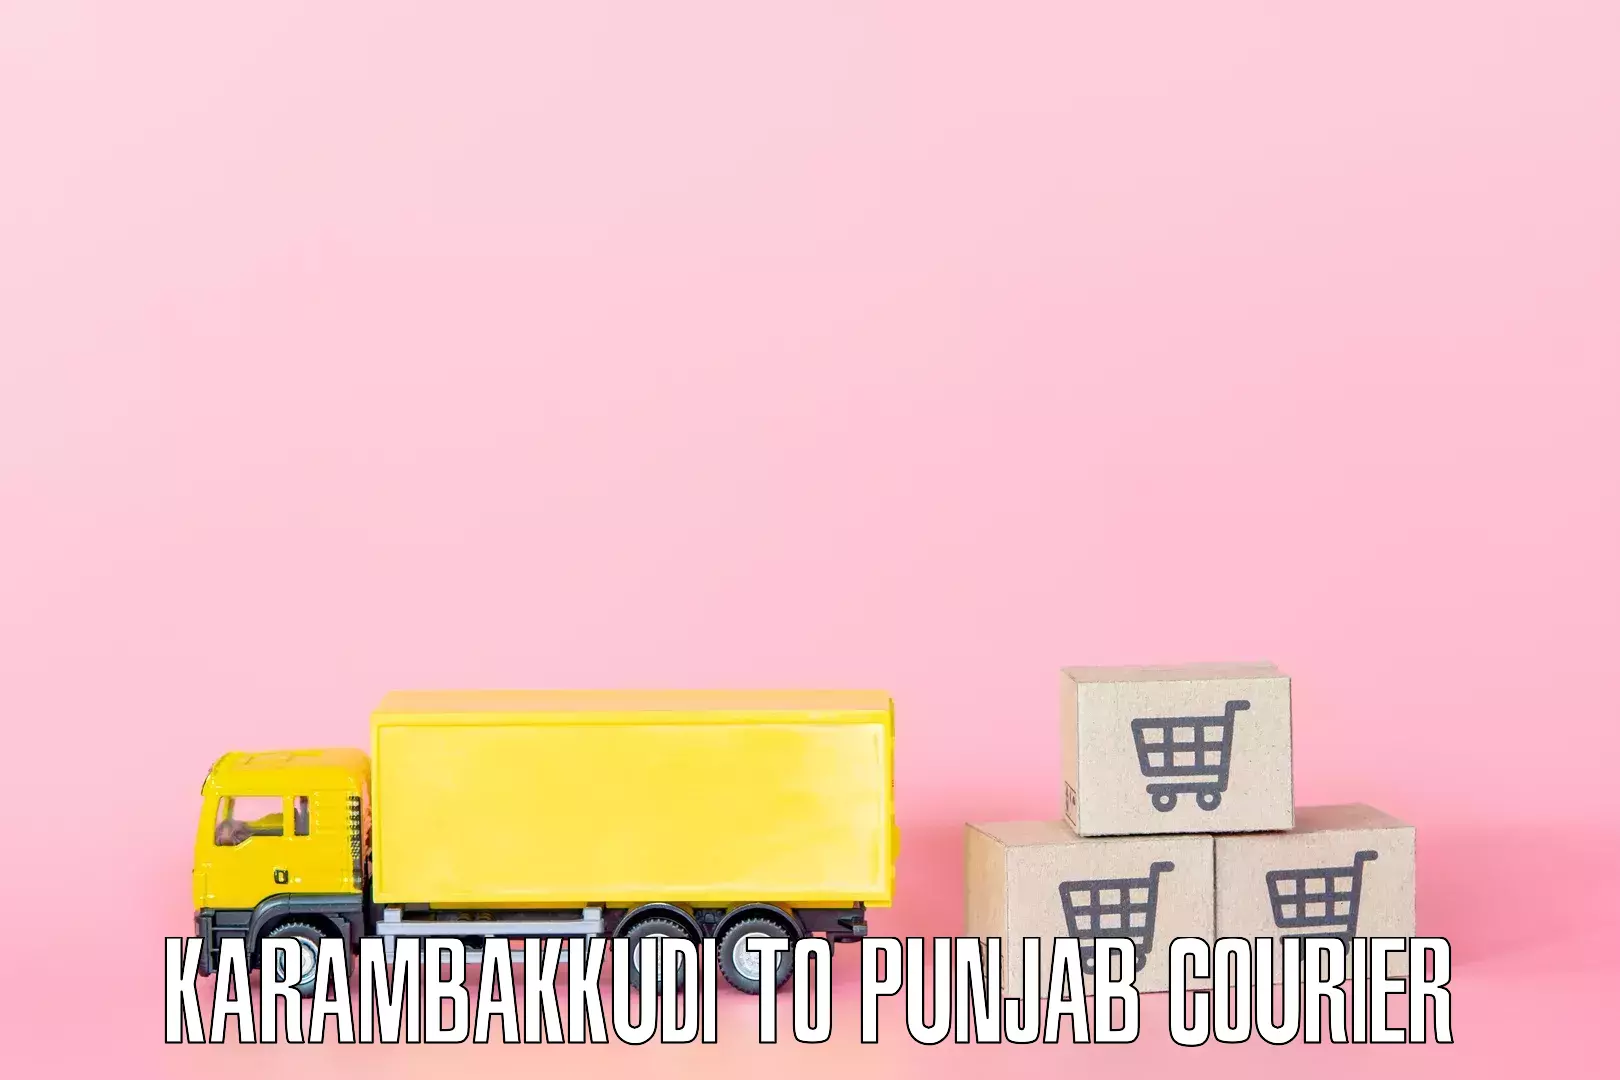 Professional furniture shifting Karambakkudi to Dinanagar